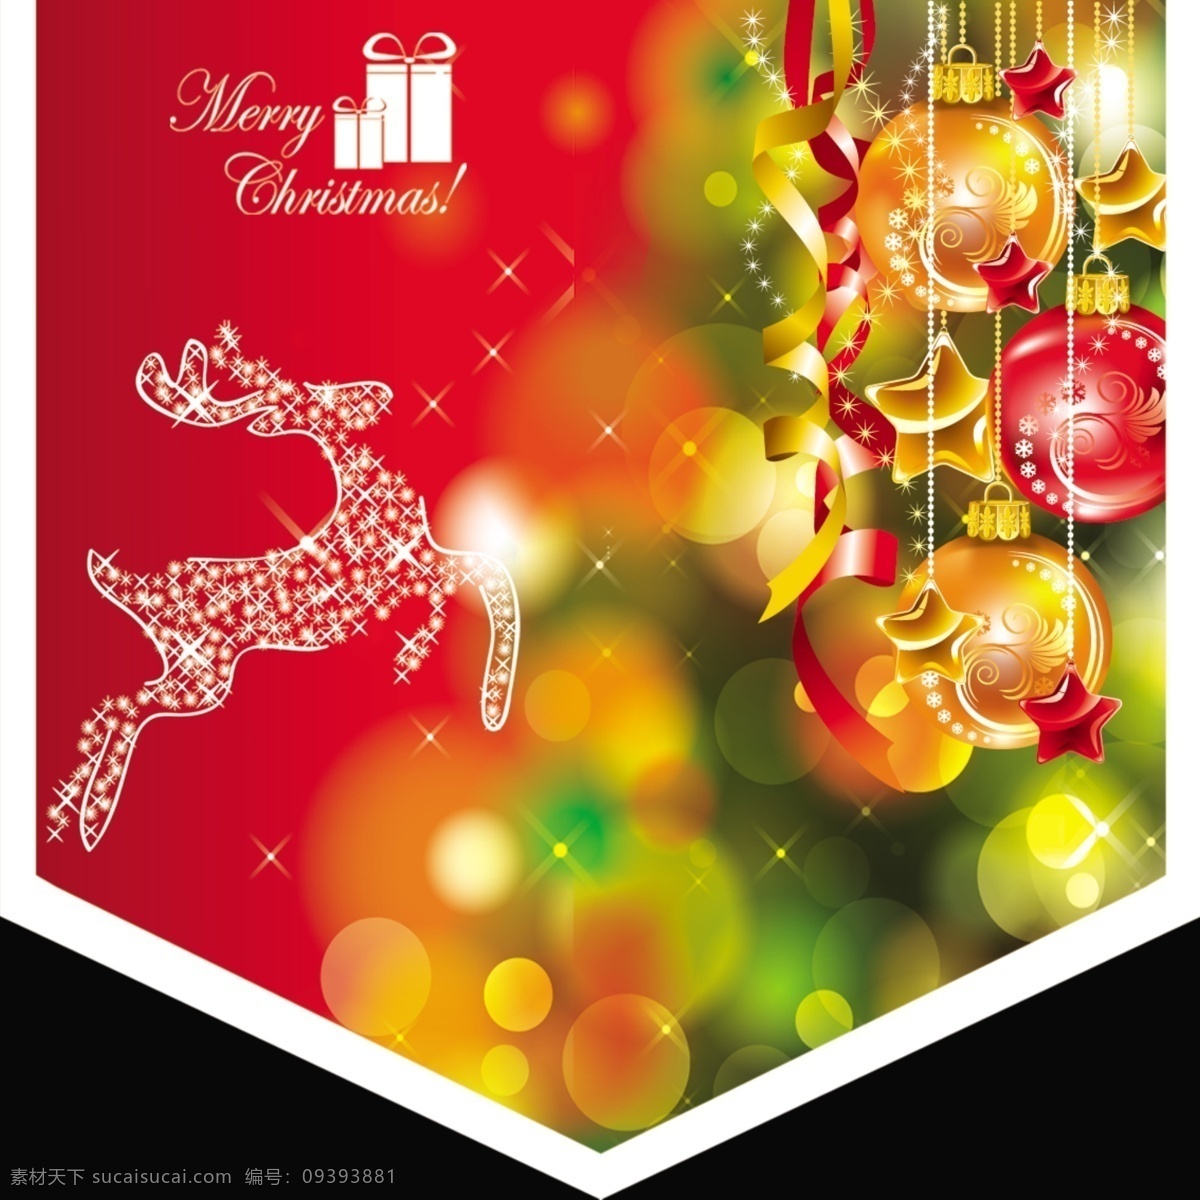 christmas merry 广告设计模板 礼包 圣诞吊旗 圣诞快乐 圣诞球 星光鹿 丝带 星星 圣诞树 源文件 其他海报设计